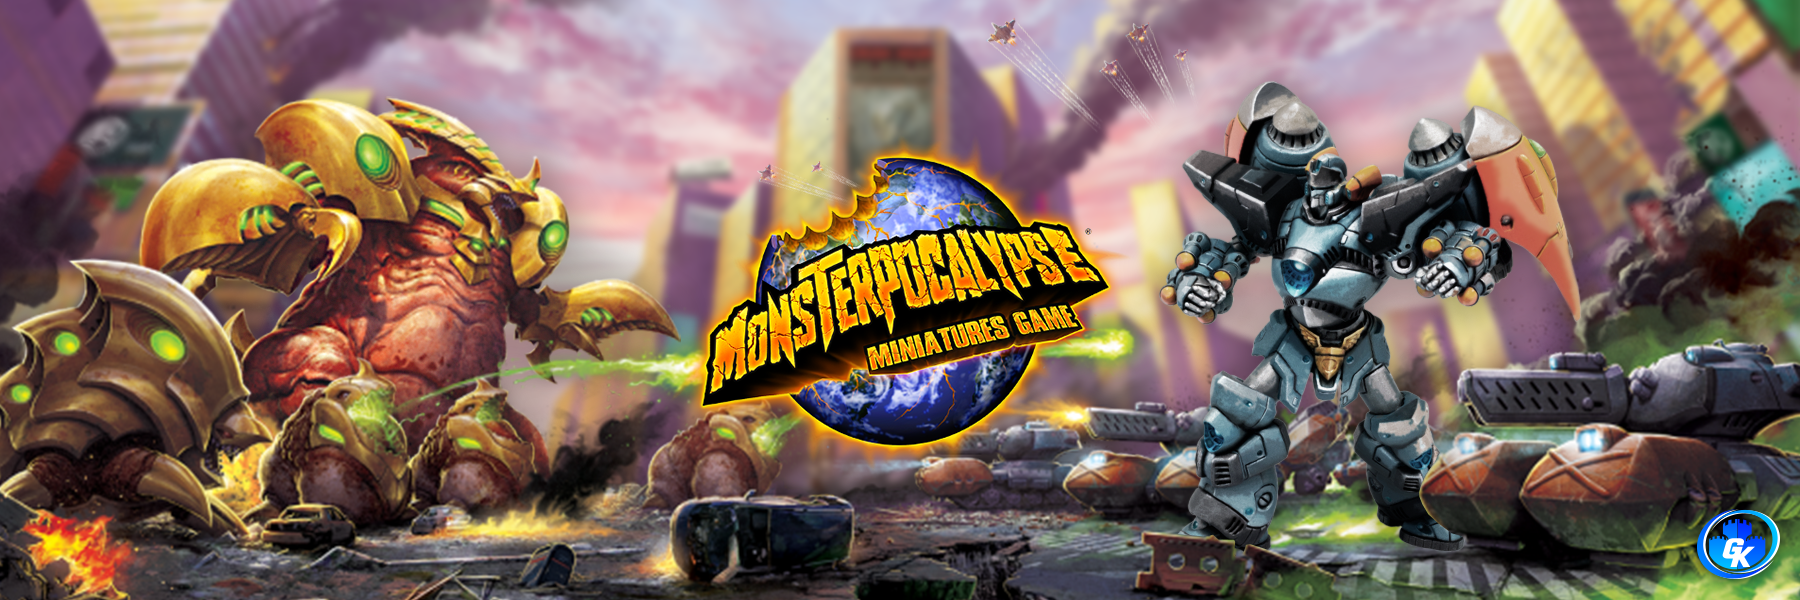 Monsterpocalypse Miniatures Game